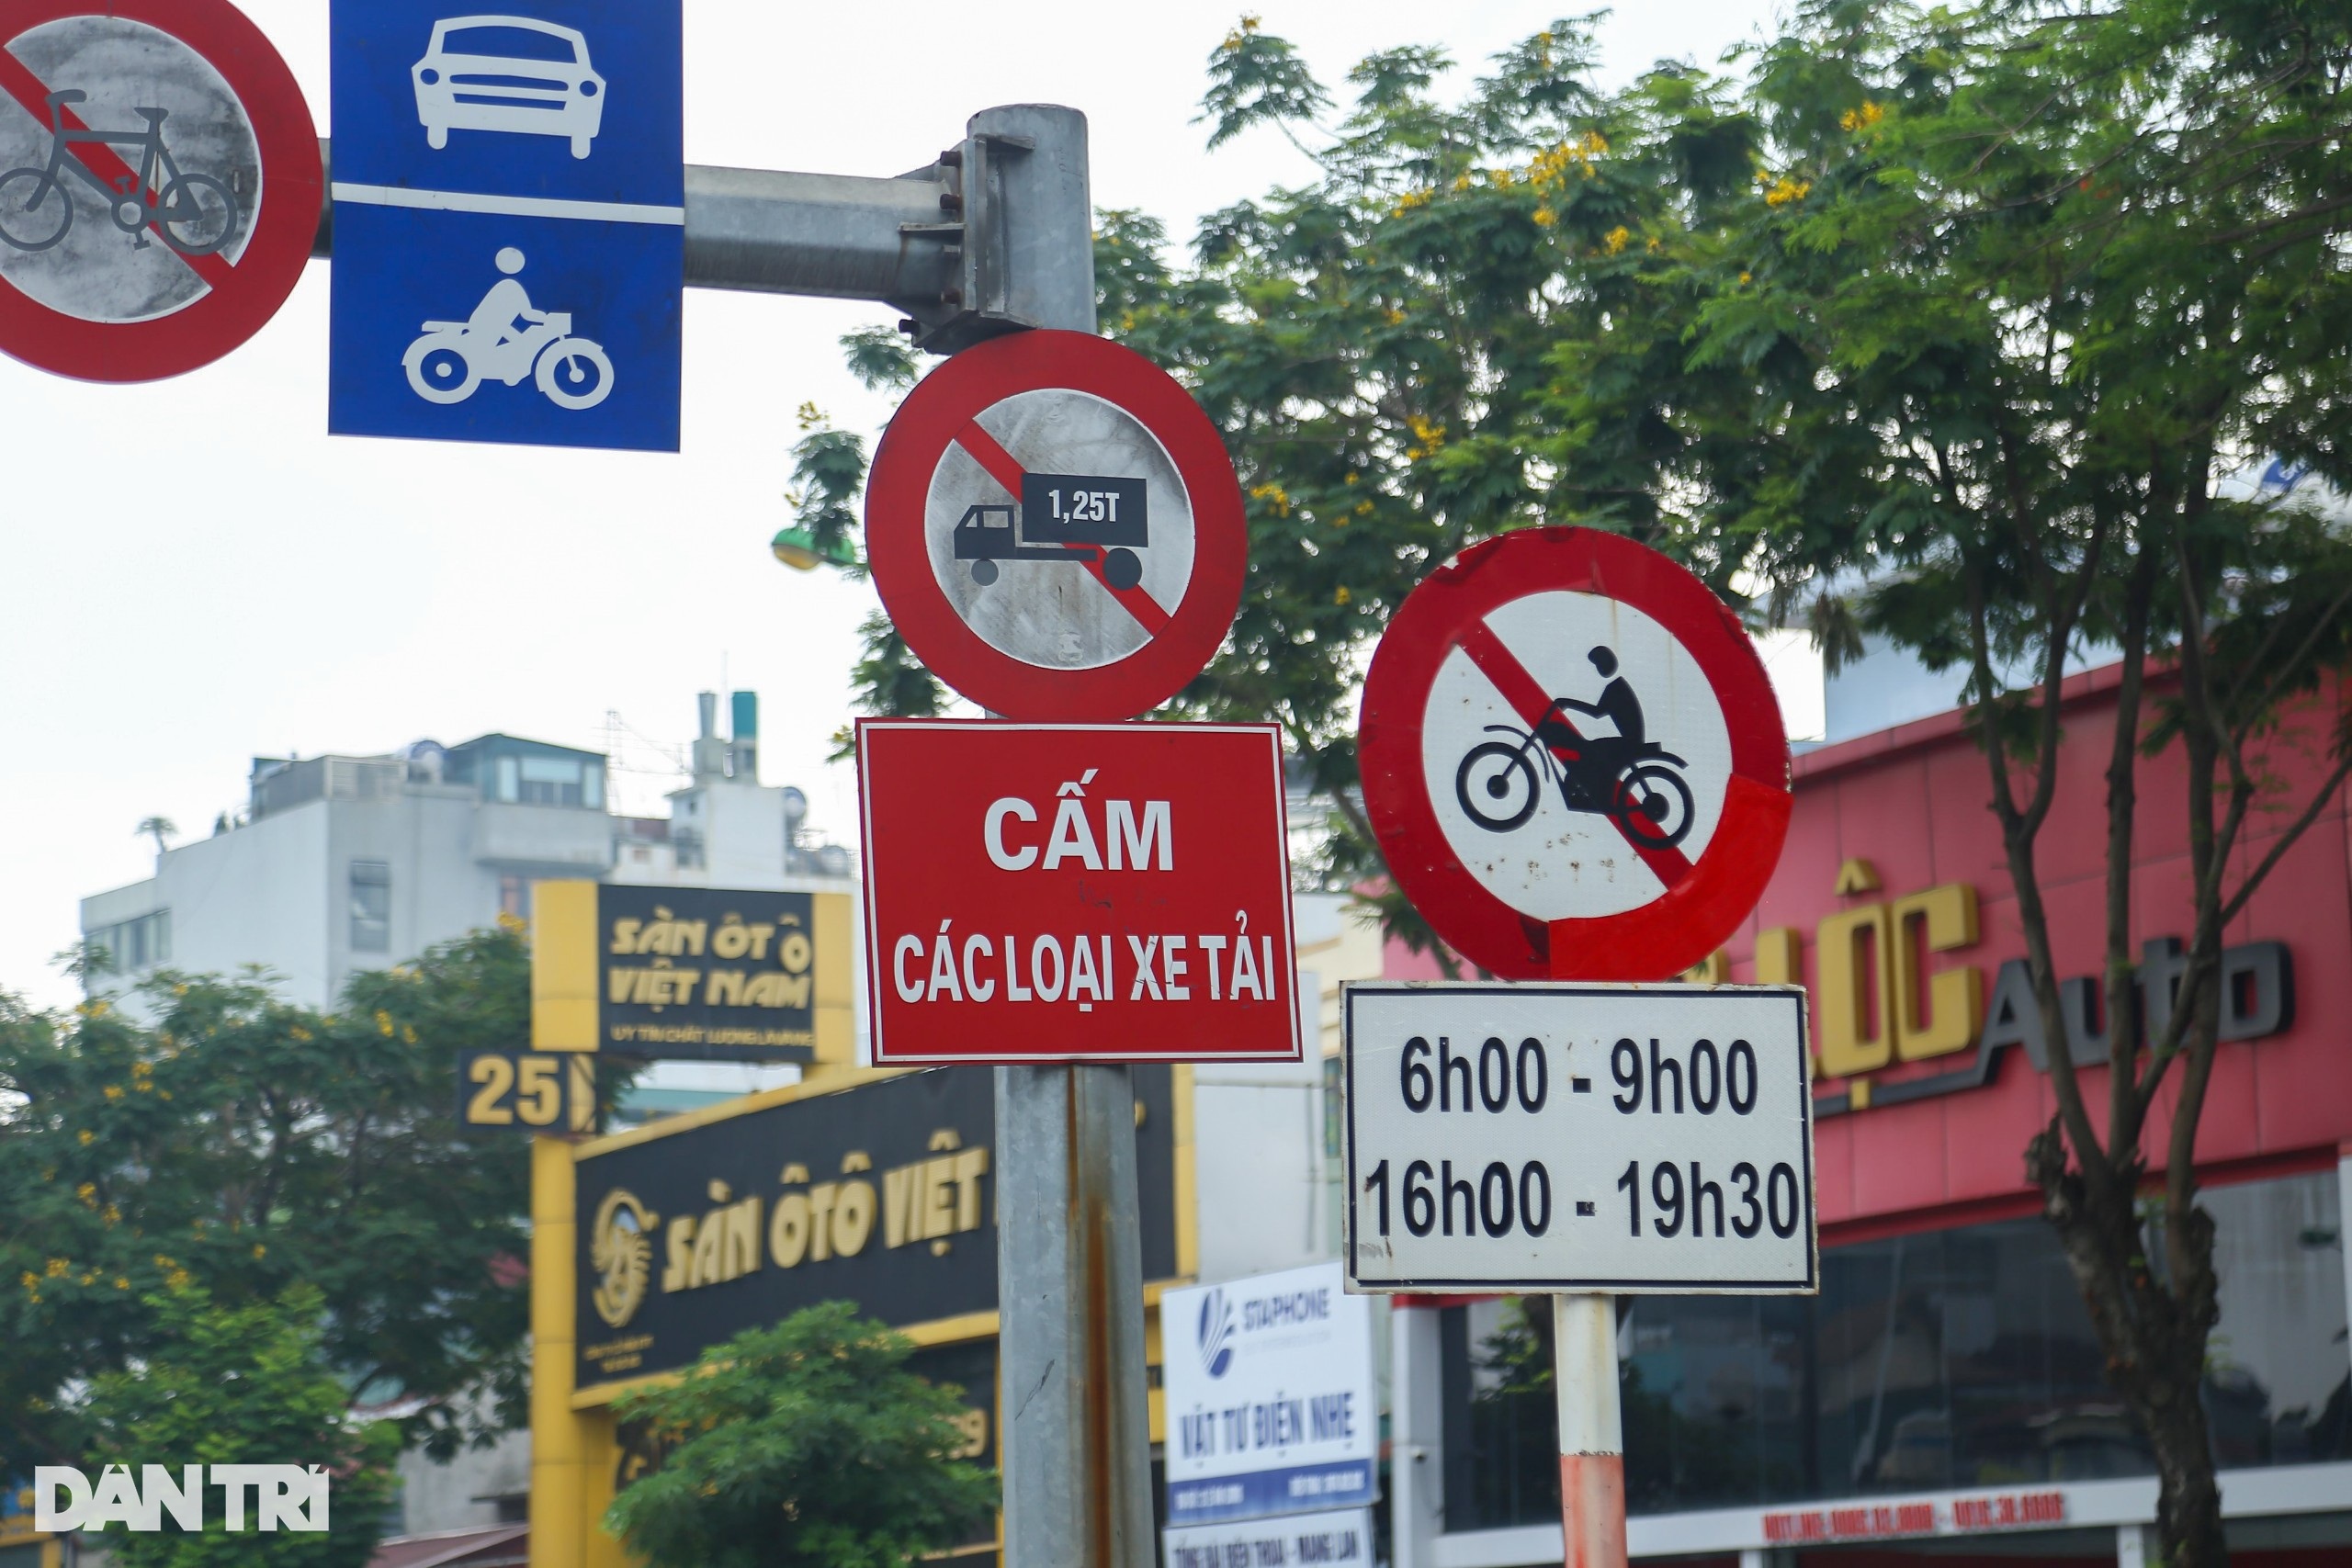 Hà Nội: Biển cấm xe máy trên cầu vượt đang để... làm cảnh? - 2